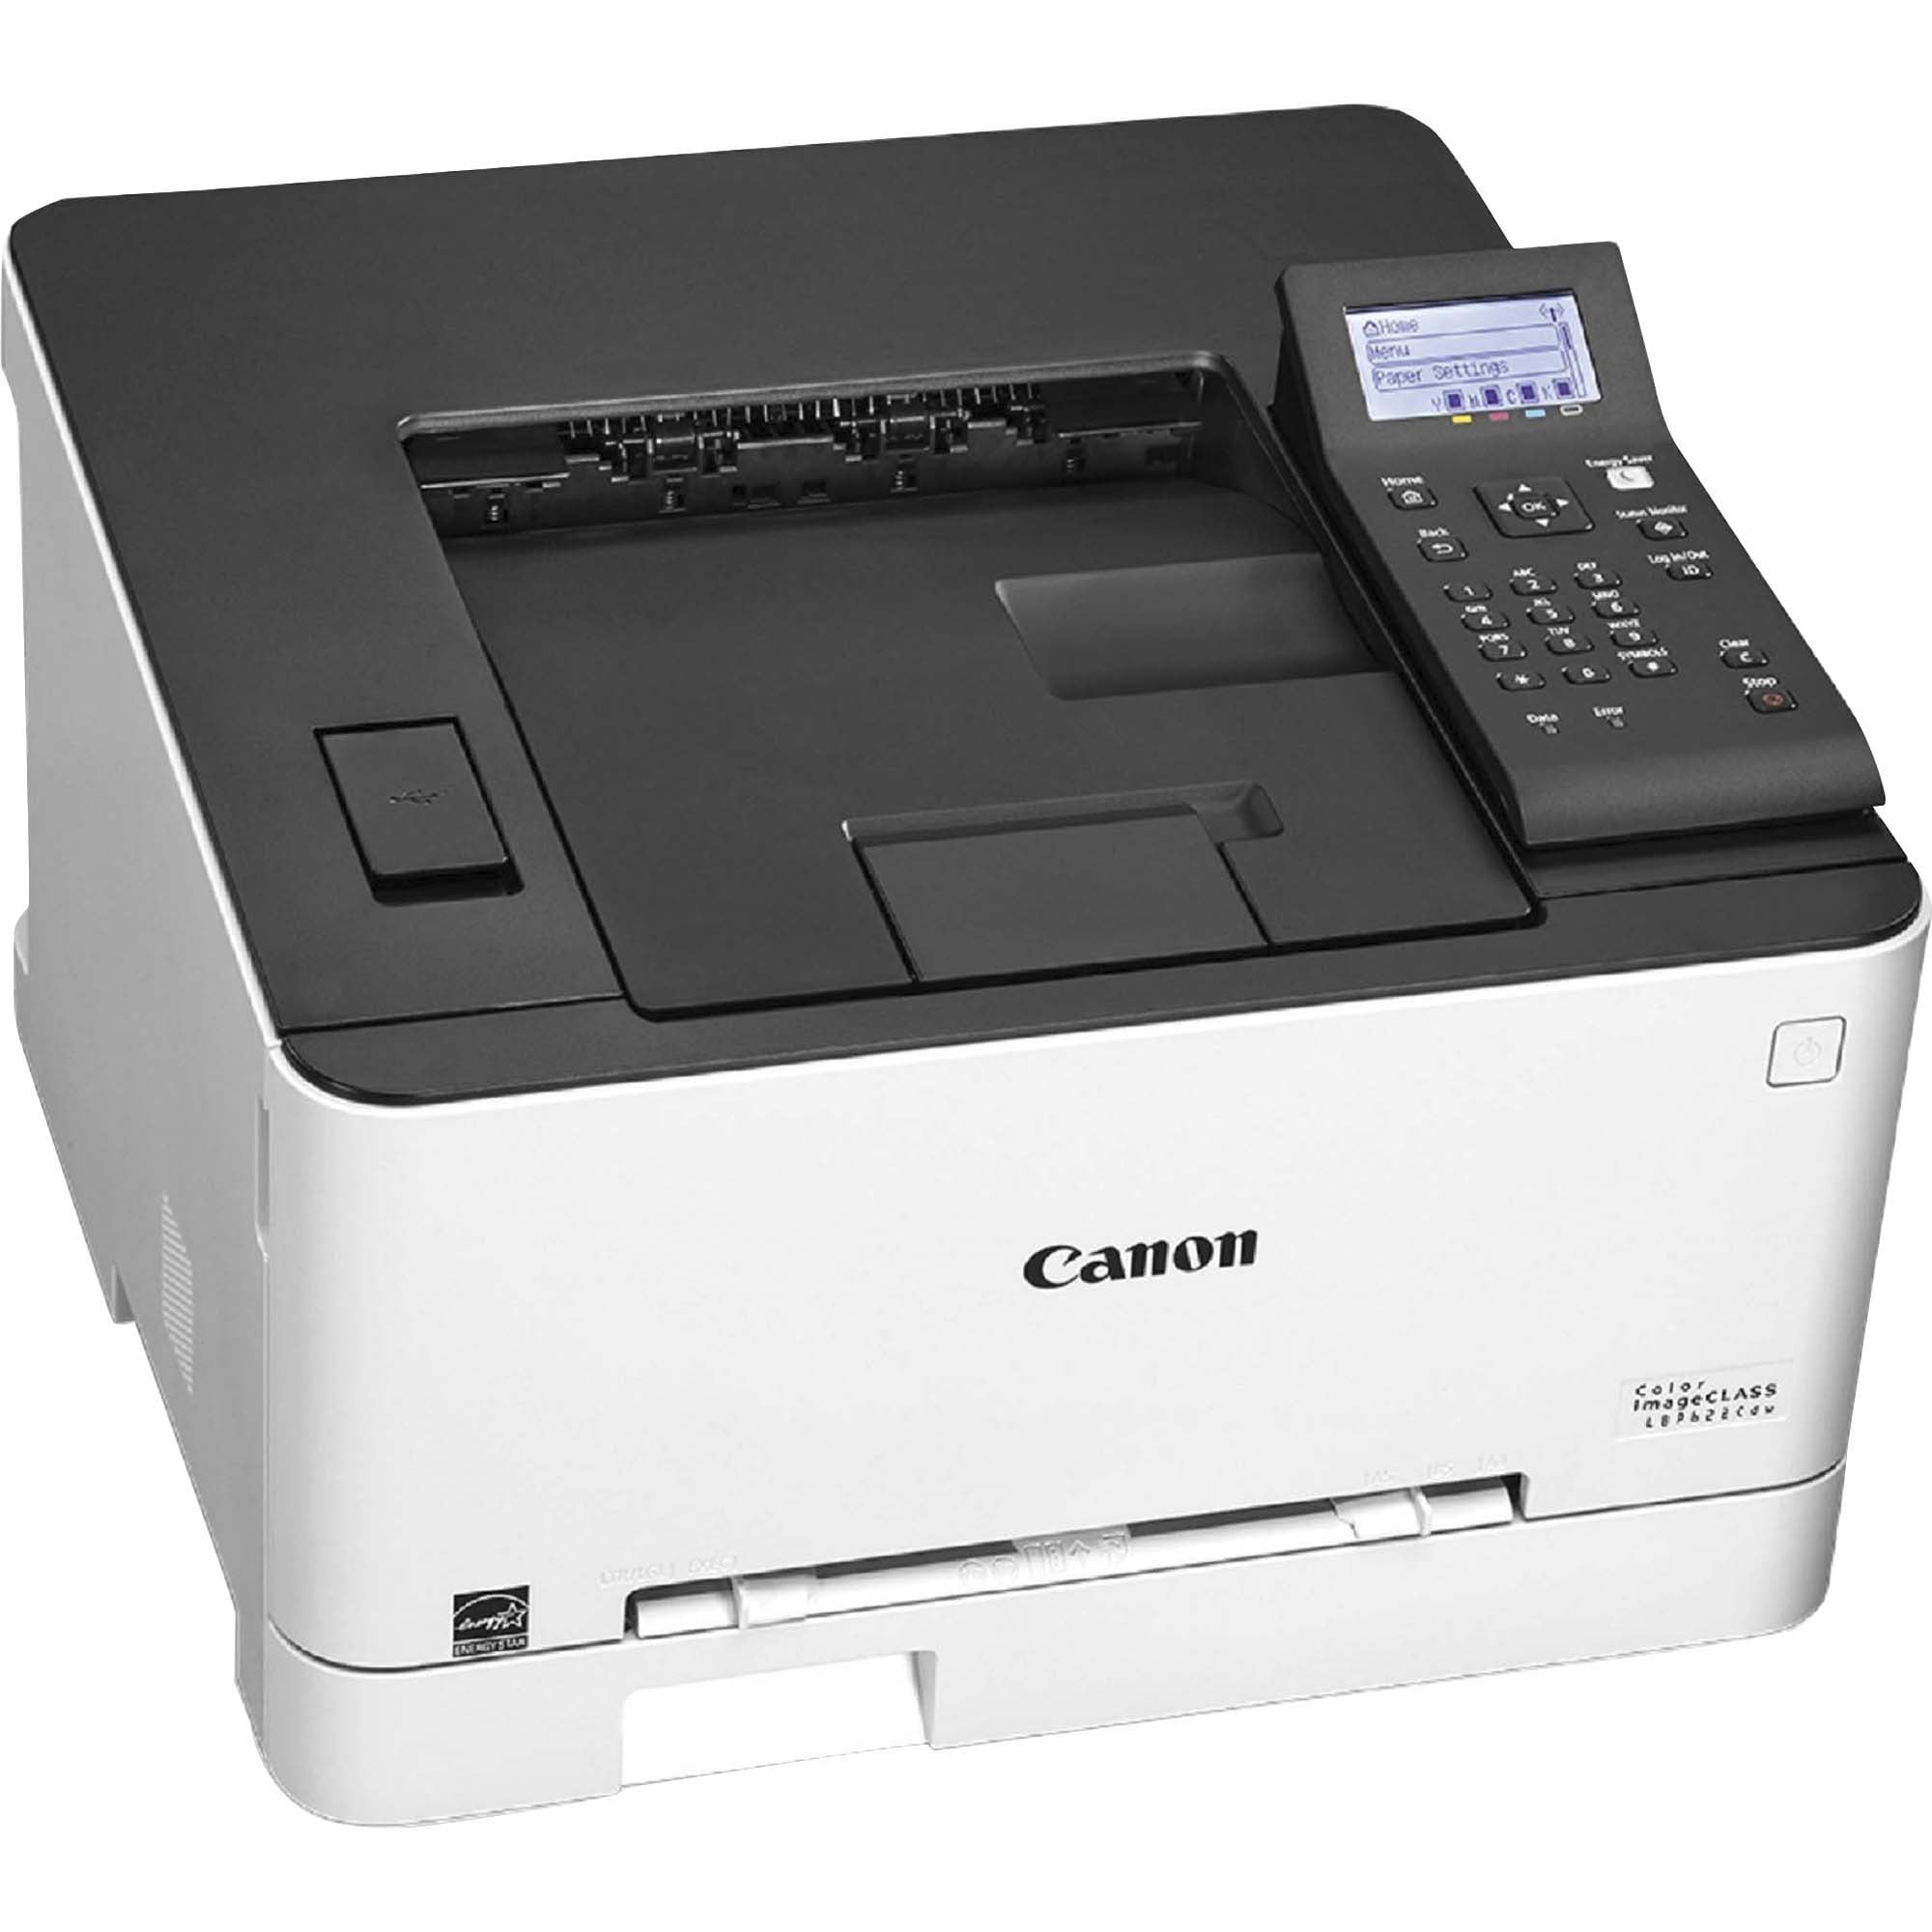 Canon imageCLASS LBP622Cdw Laser Printer - Color 22 ppm Mono / 22 ppm Color  - 600 x 600 dpi Print - Automatic Duplex Print - 251 Sheets Input - 